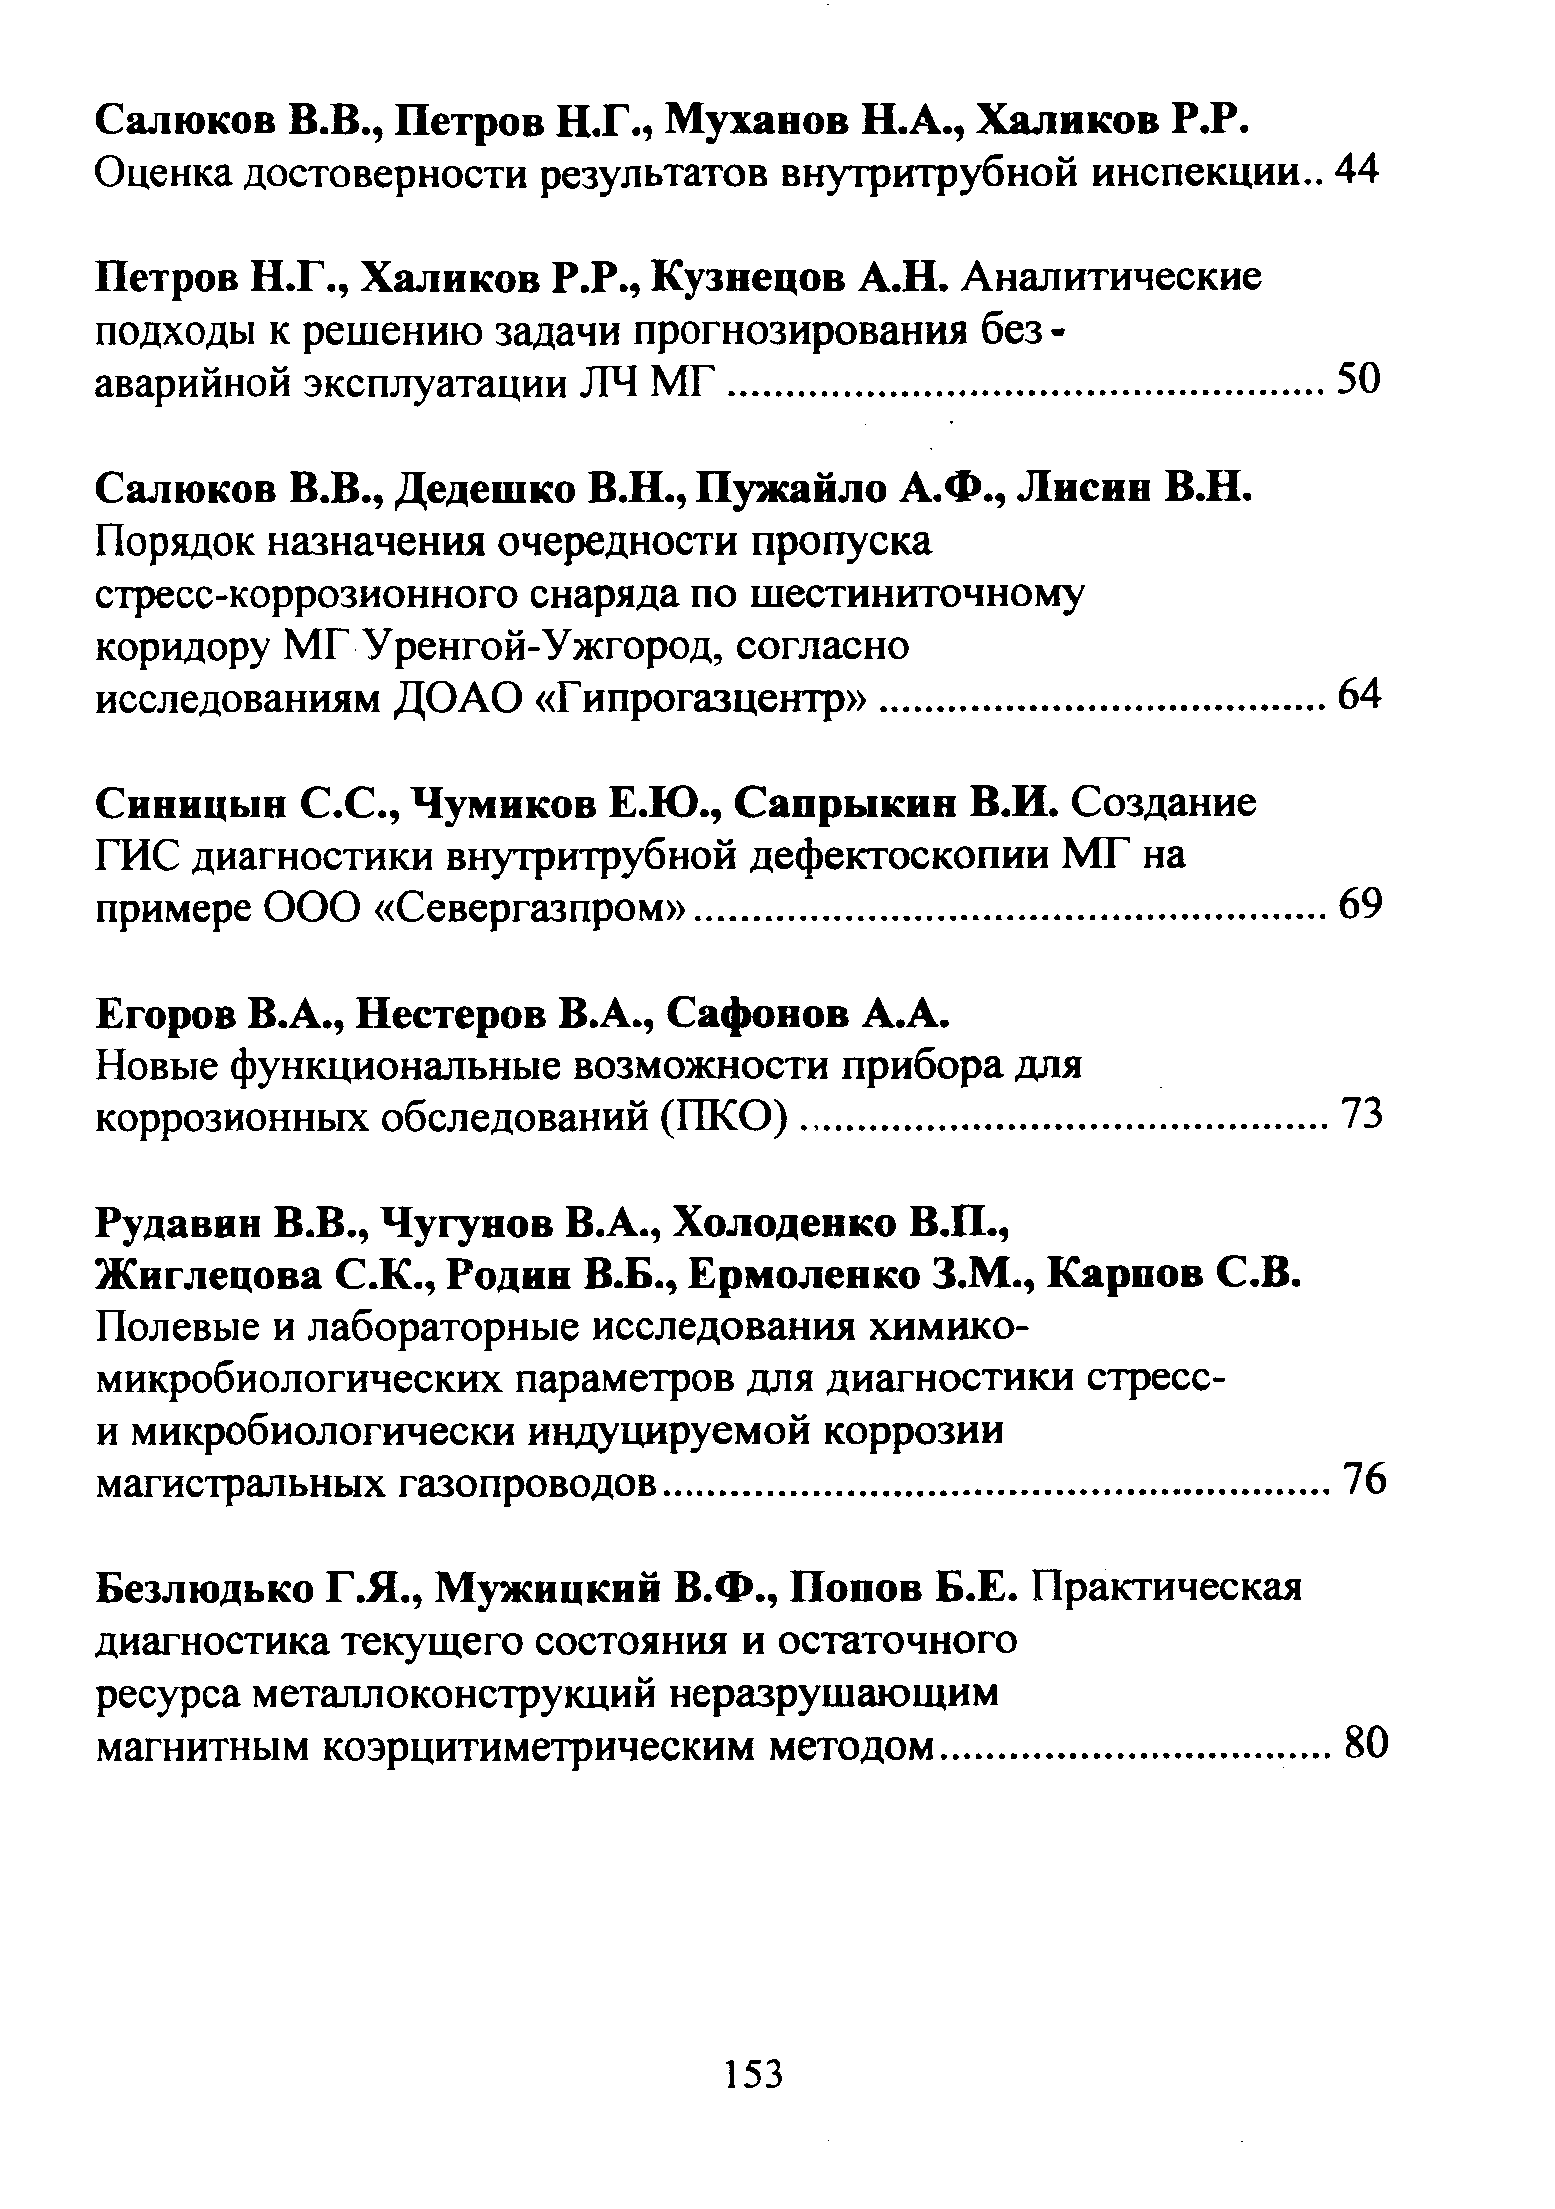 Егоров В.А., Нестеров В.А., Сафонов А.А.
